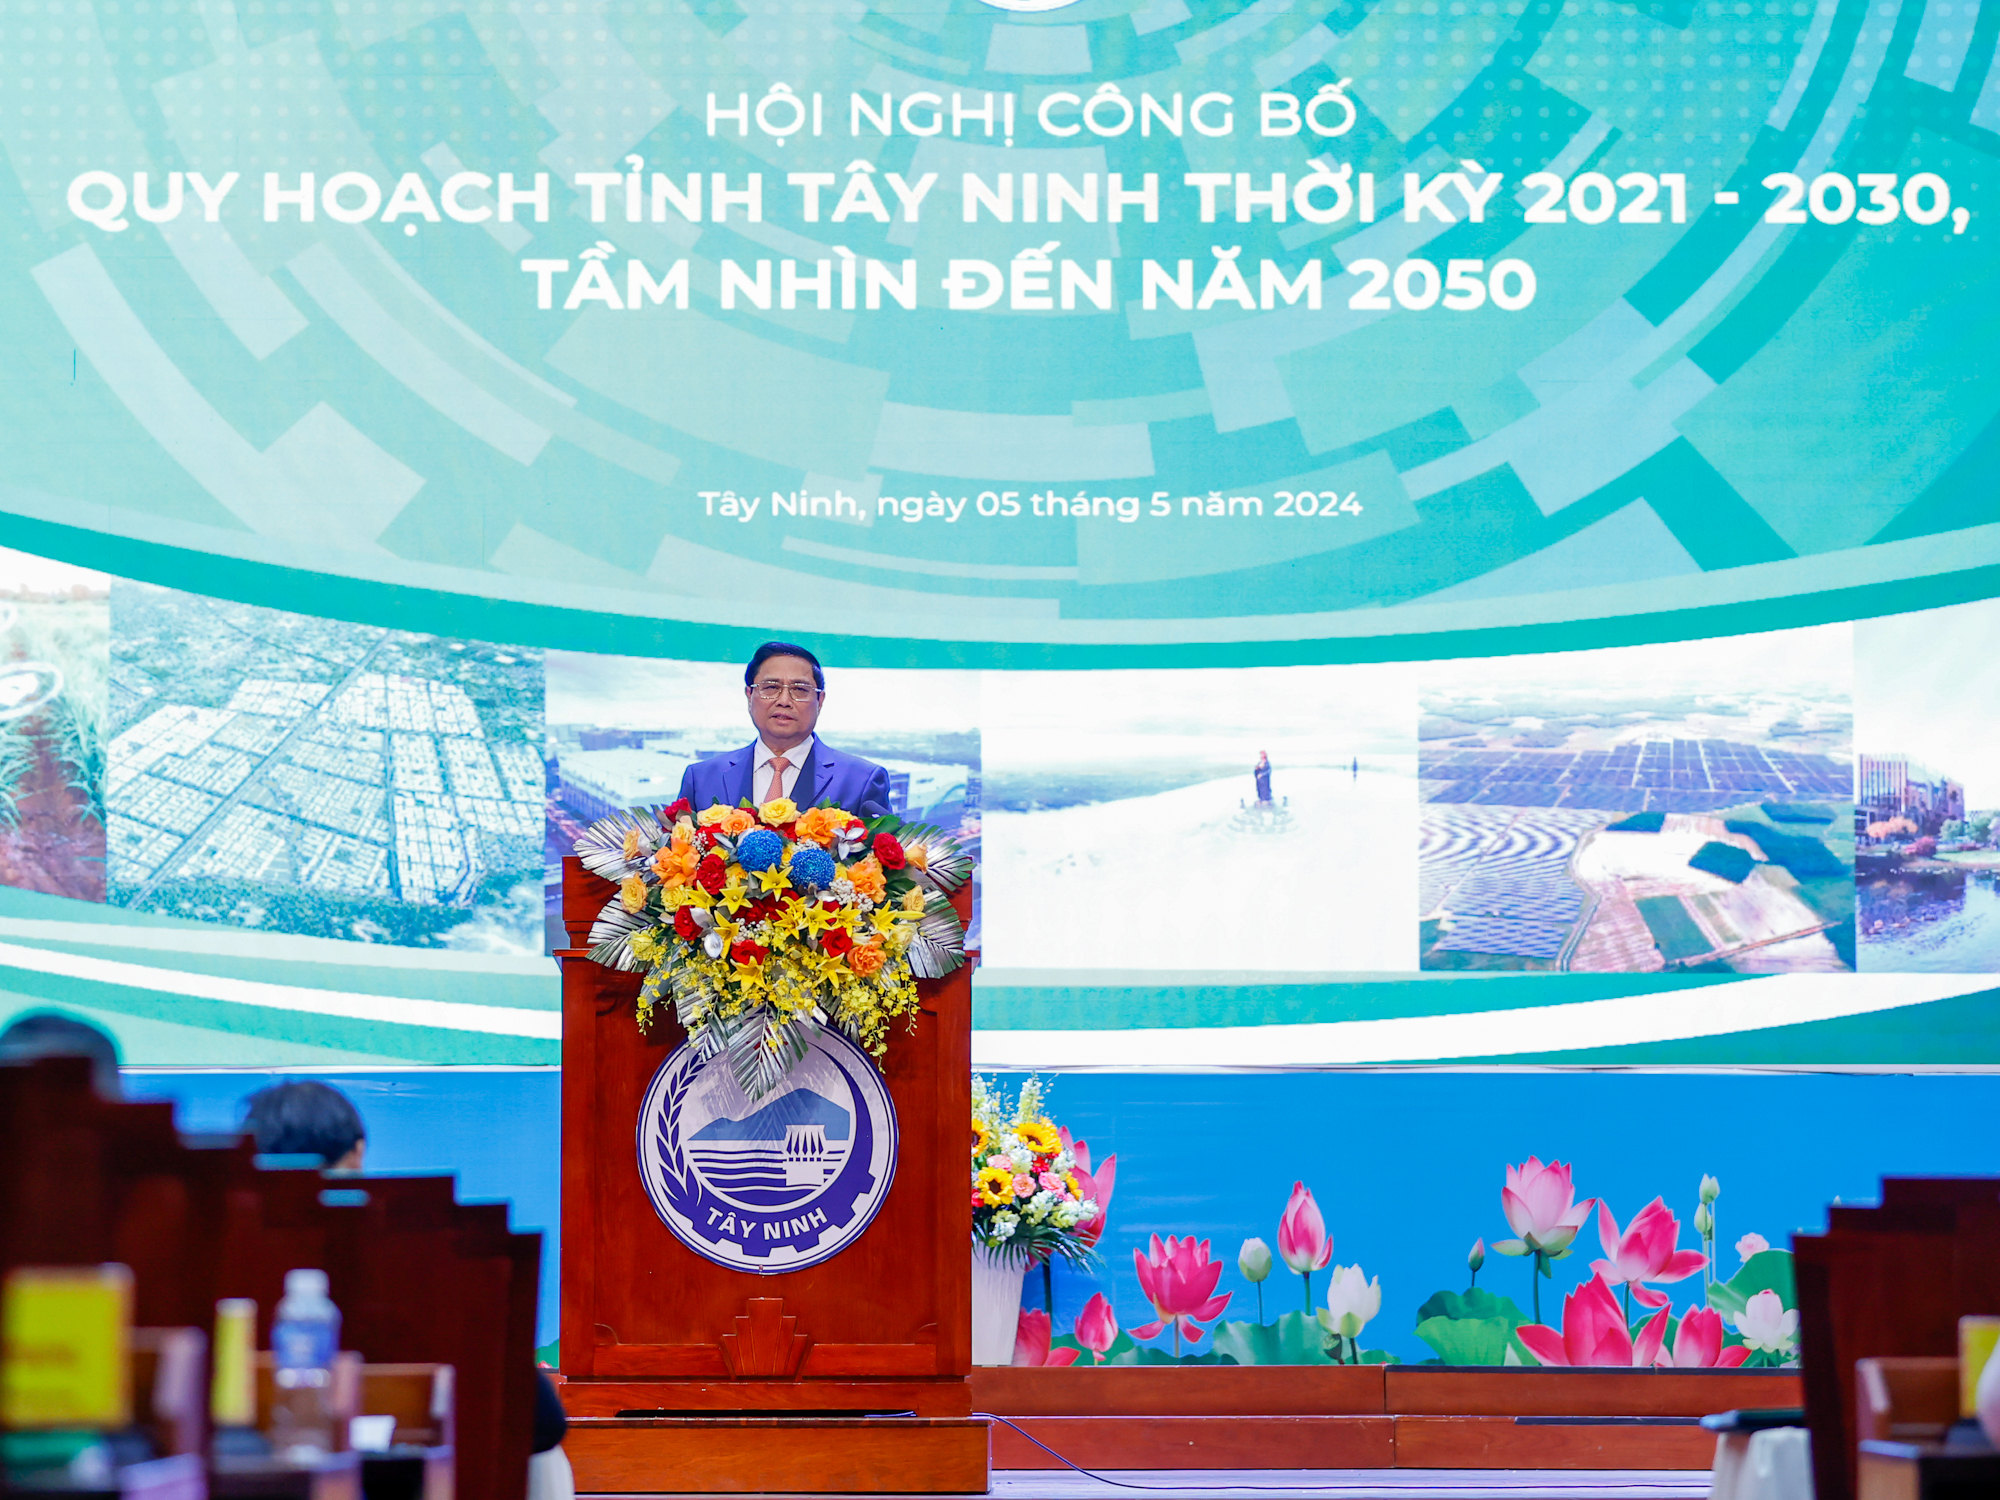 Đánh giá cao các nội dung của Quy hoạch tỉnh Tây Ninh, Thủ tướng yêu cầu tỉnh cần chú trọng, tập trung thực hiện ""1 trọng tâm, 2 tăng cường, 3 đẩy mạnh" - Ảnh: VGP/Nhật Bắc